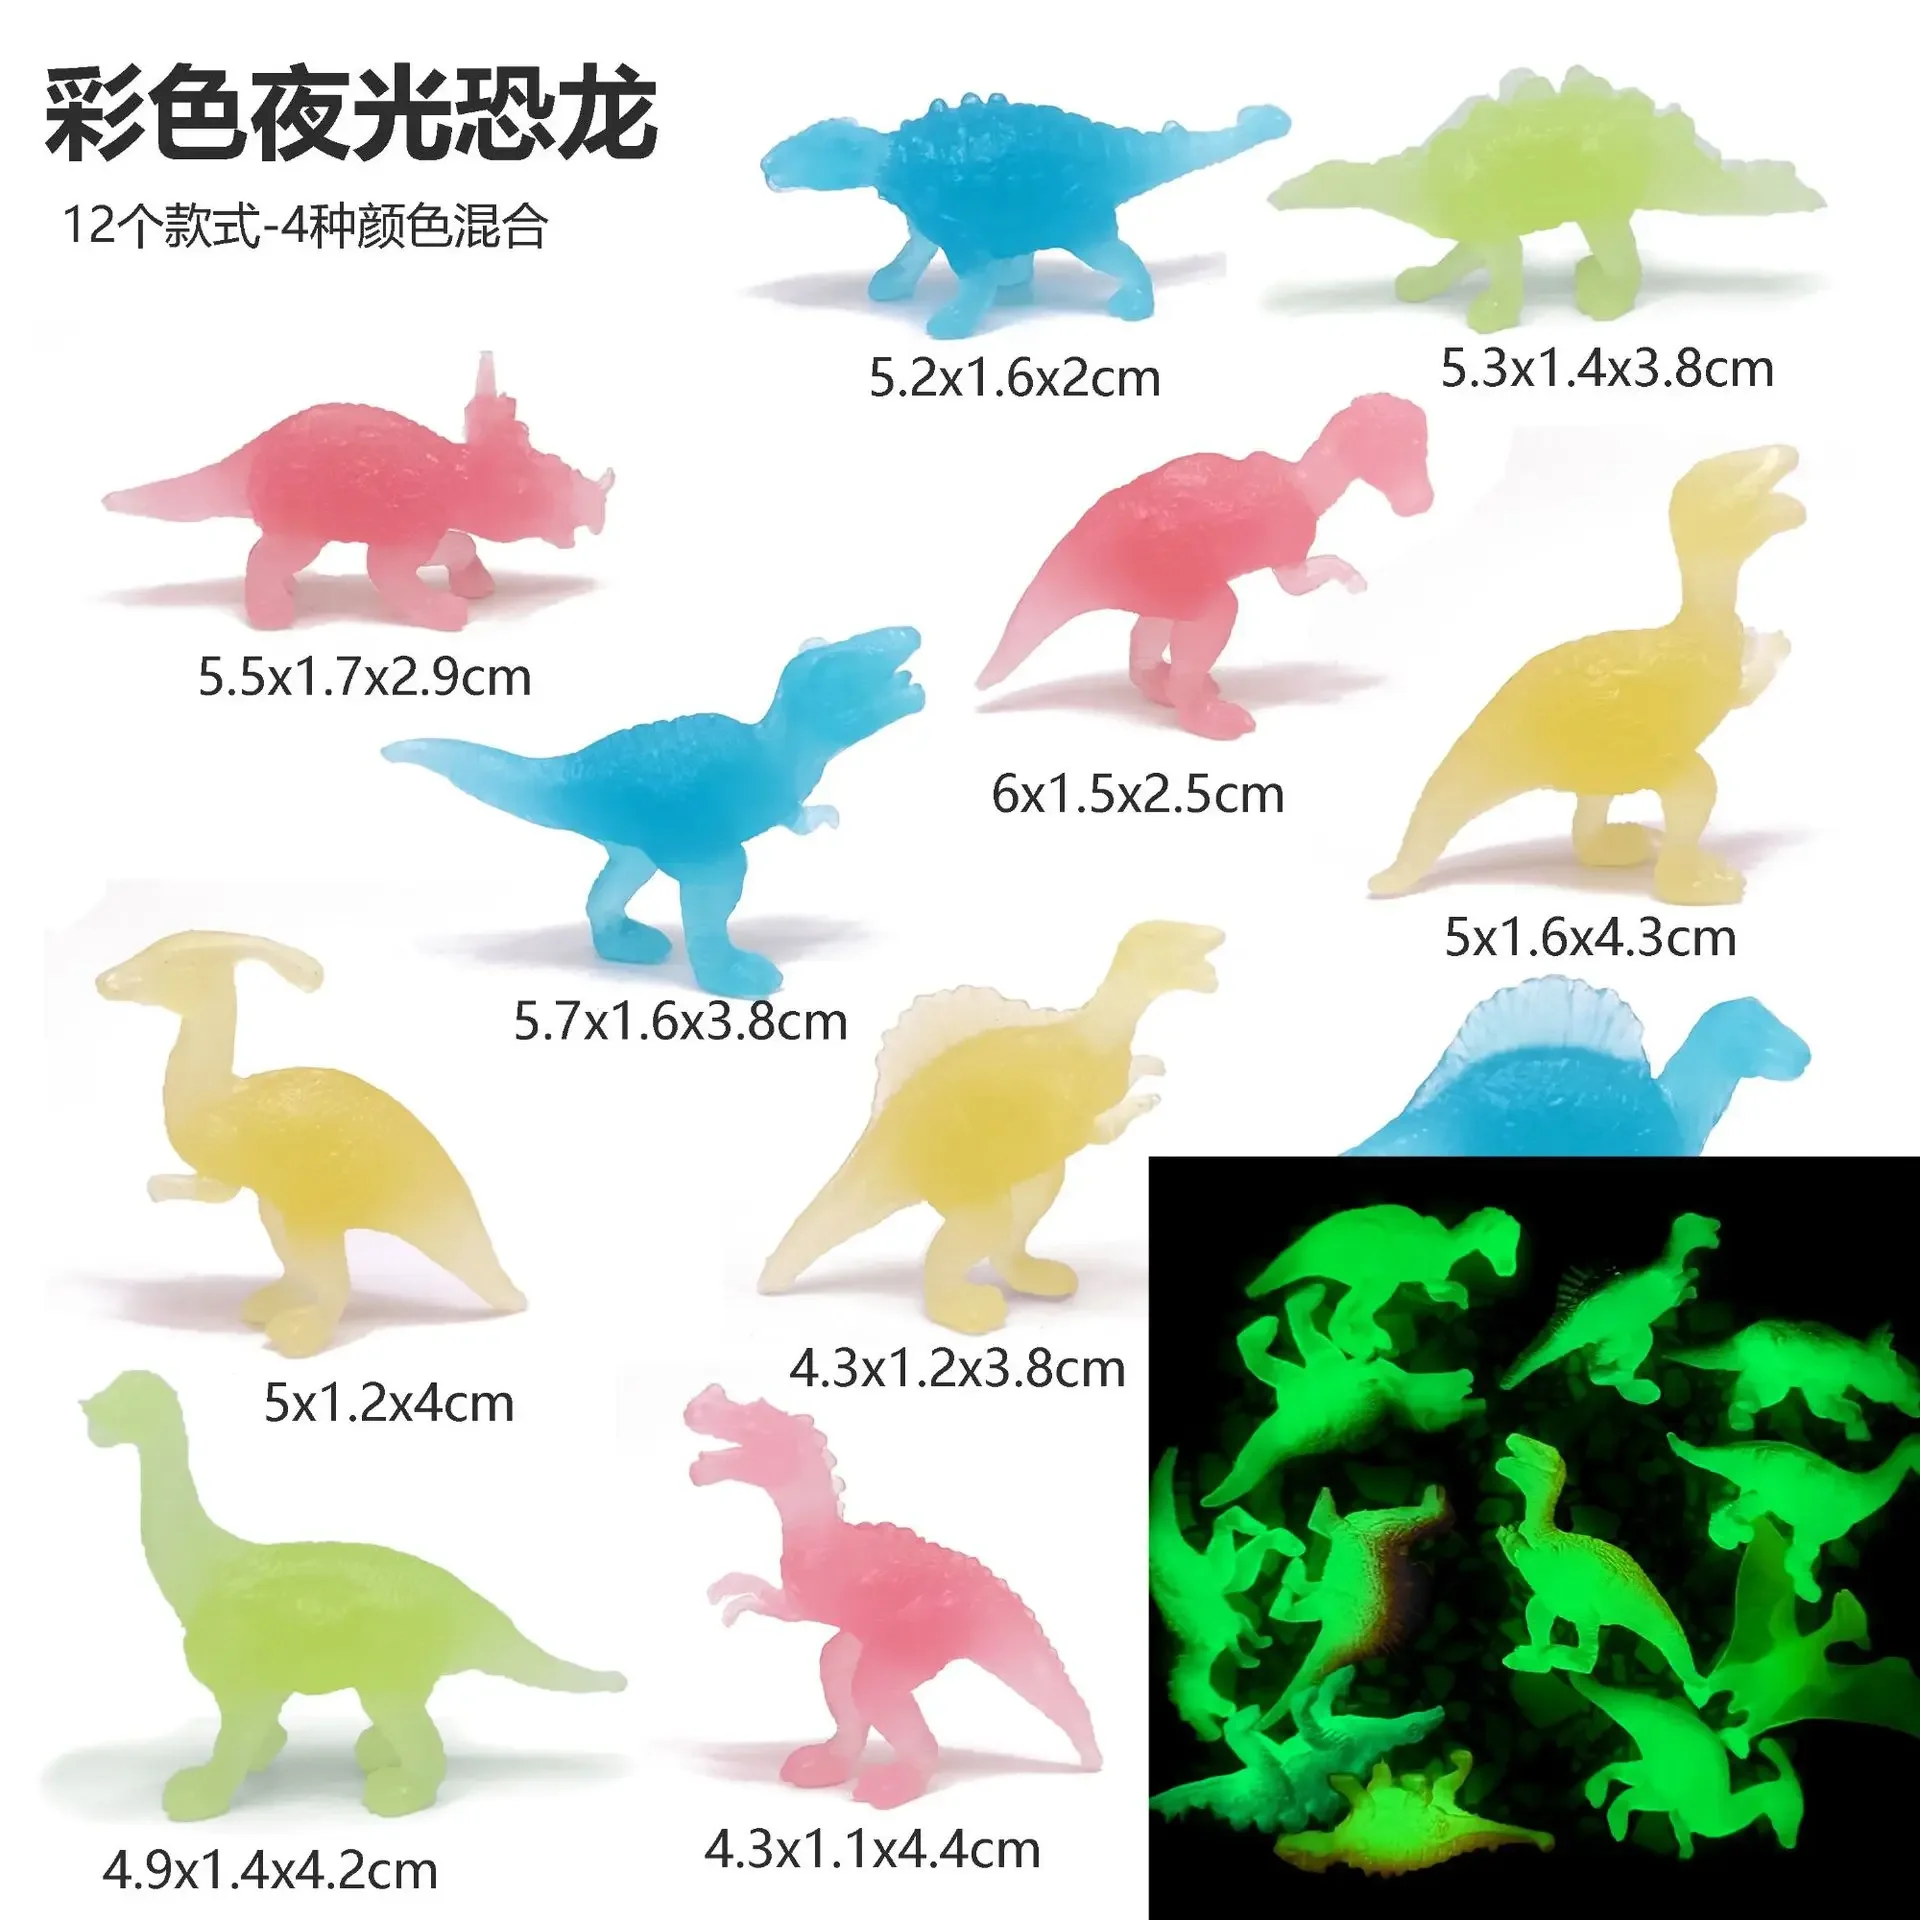 

12 светящихся в темноте мини-модели динозавров Птерозавр Трицератопс тираннозавр Стегозавр сплошная модель детские игрушки